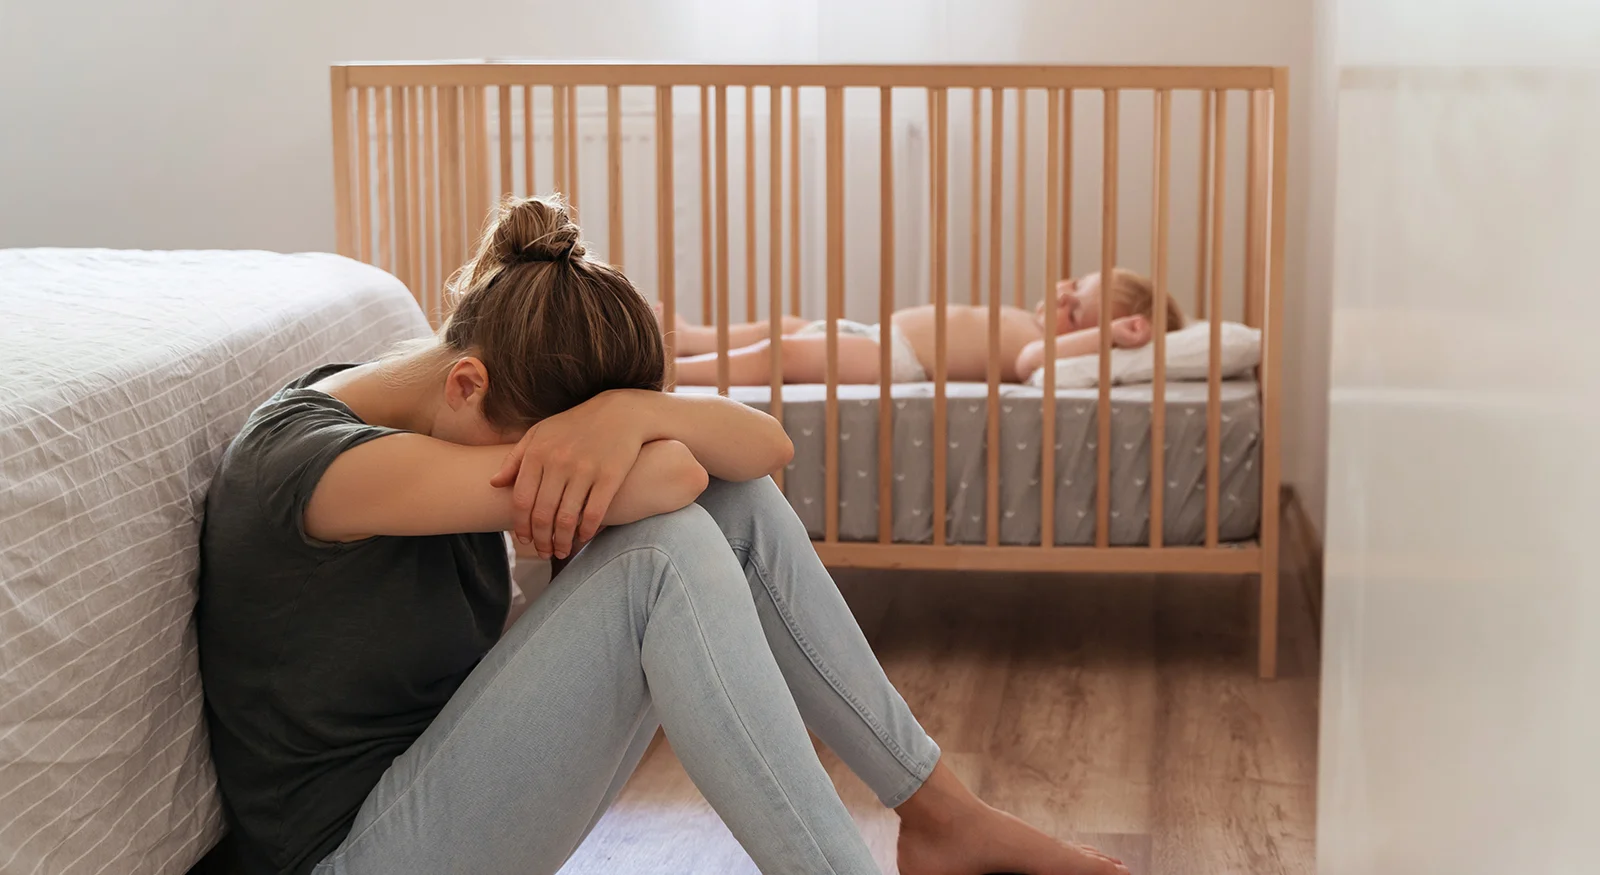 What causes Postpartum Depression